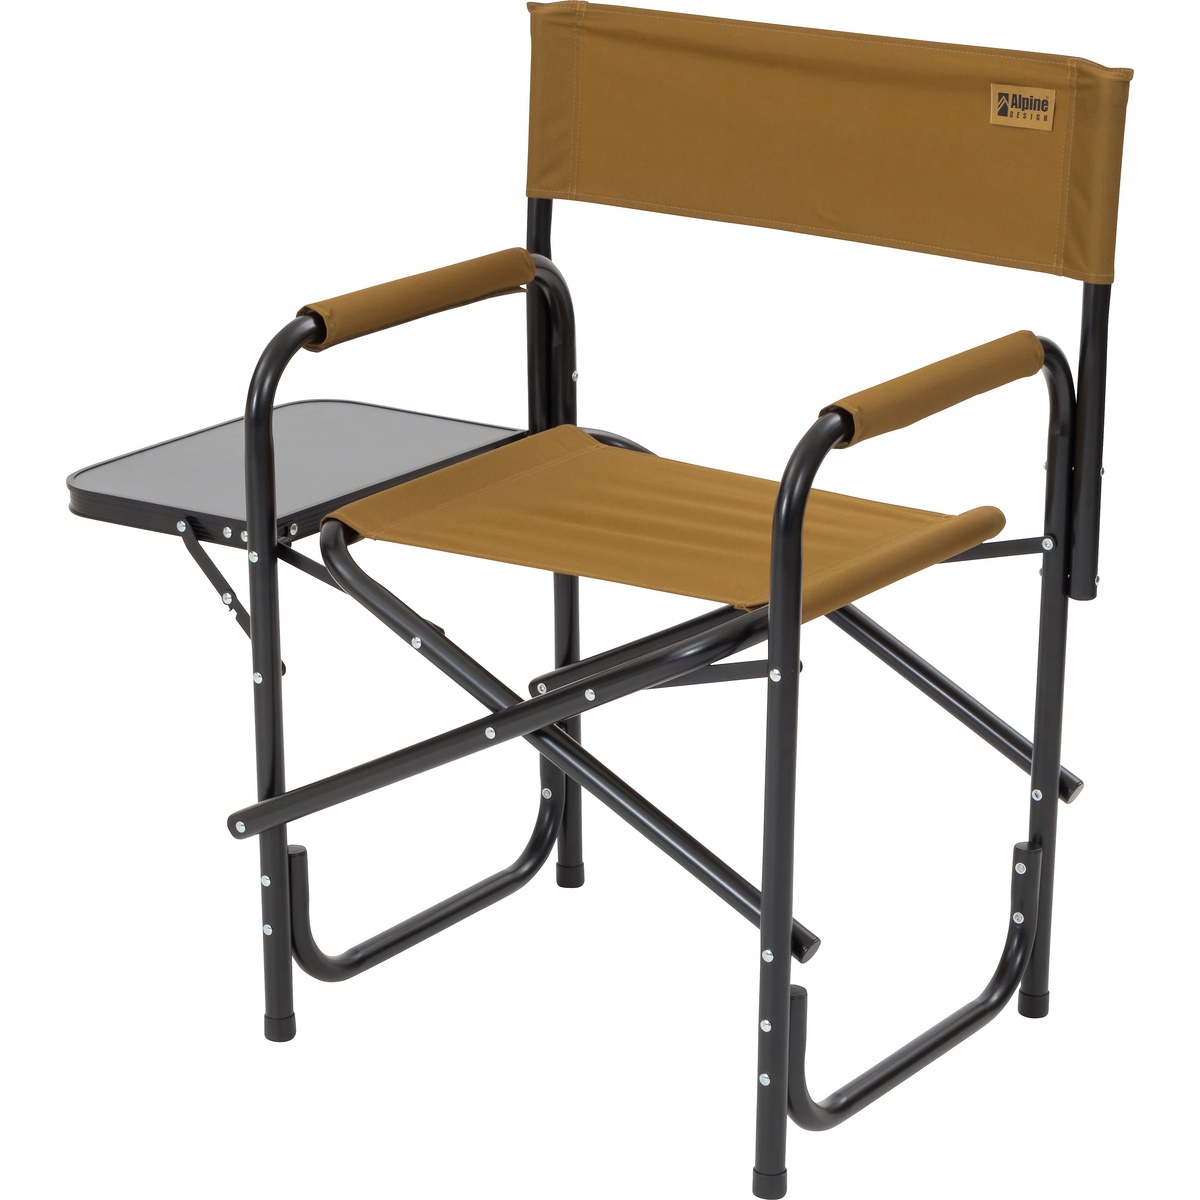 【楽天市場】アルパインデザイン (Alpine DESIGN) サイドテーブル付アルミディレクターチェア キャンプ用品 ファミリーチェア 椅子